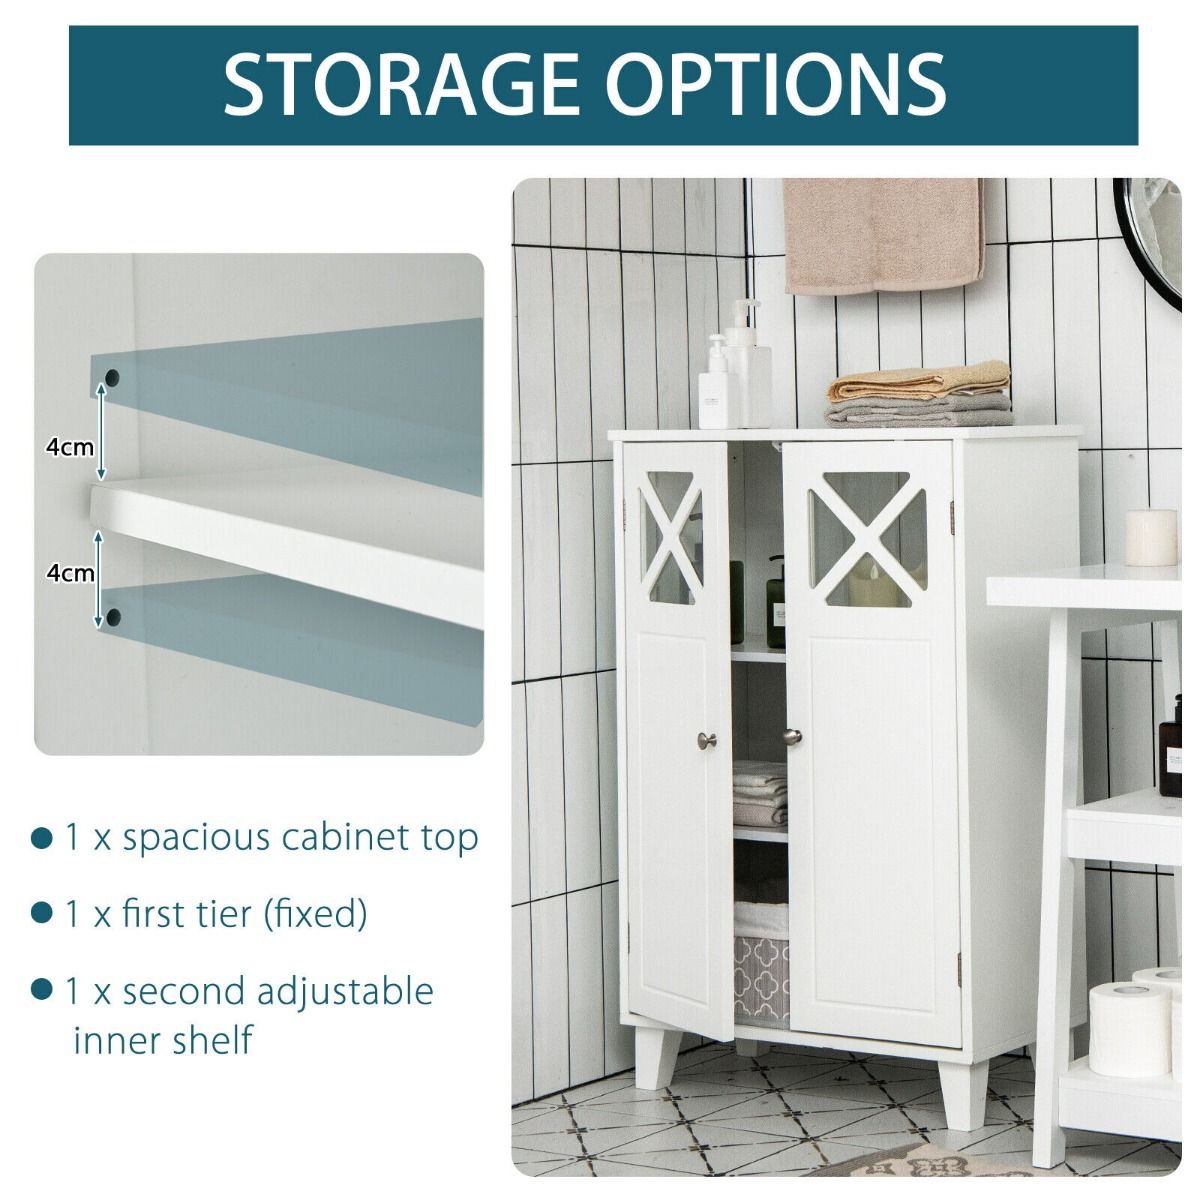 Wooden Bathroom Floor Storage Cabinet with Double Doors and Adjustable Shelf